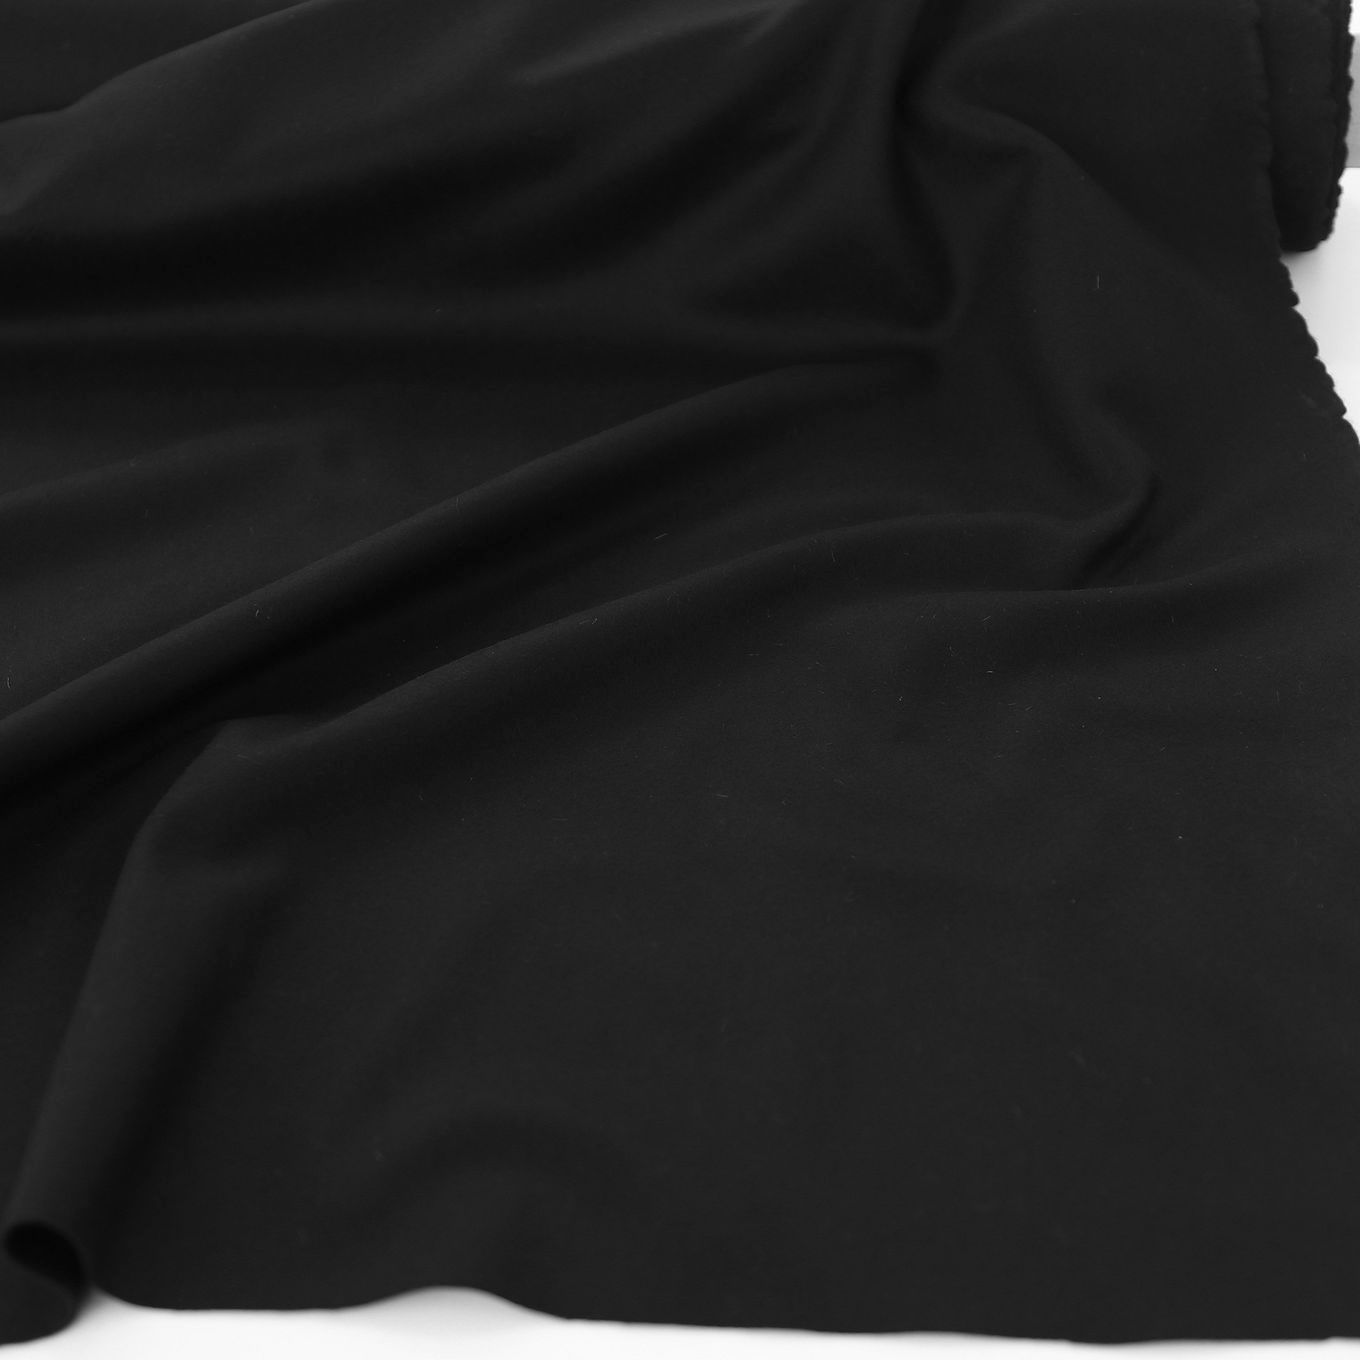 schwarz Loden-Stoff weich warm Winter-Bekleidung Mantel Woll-Tuch Meterware